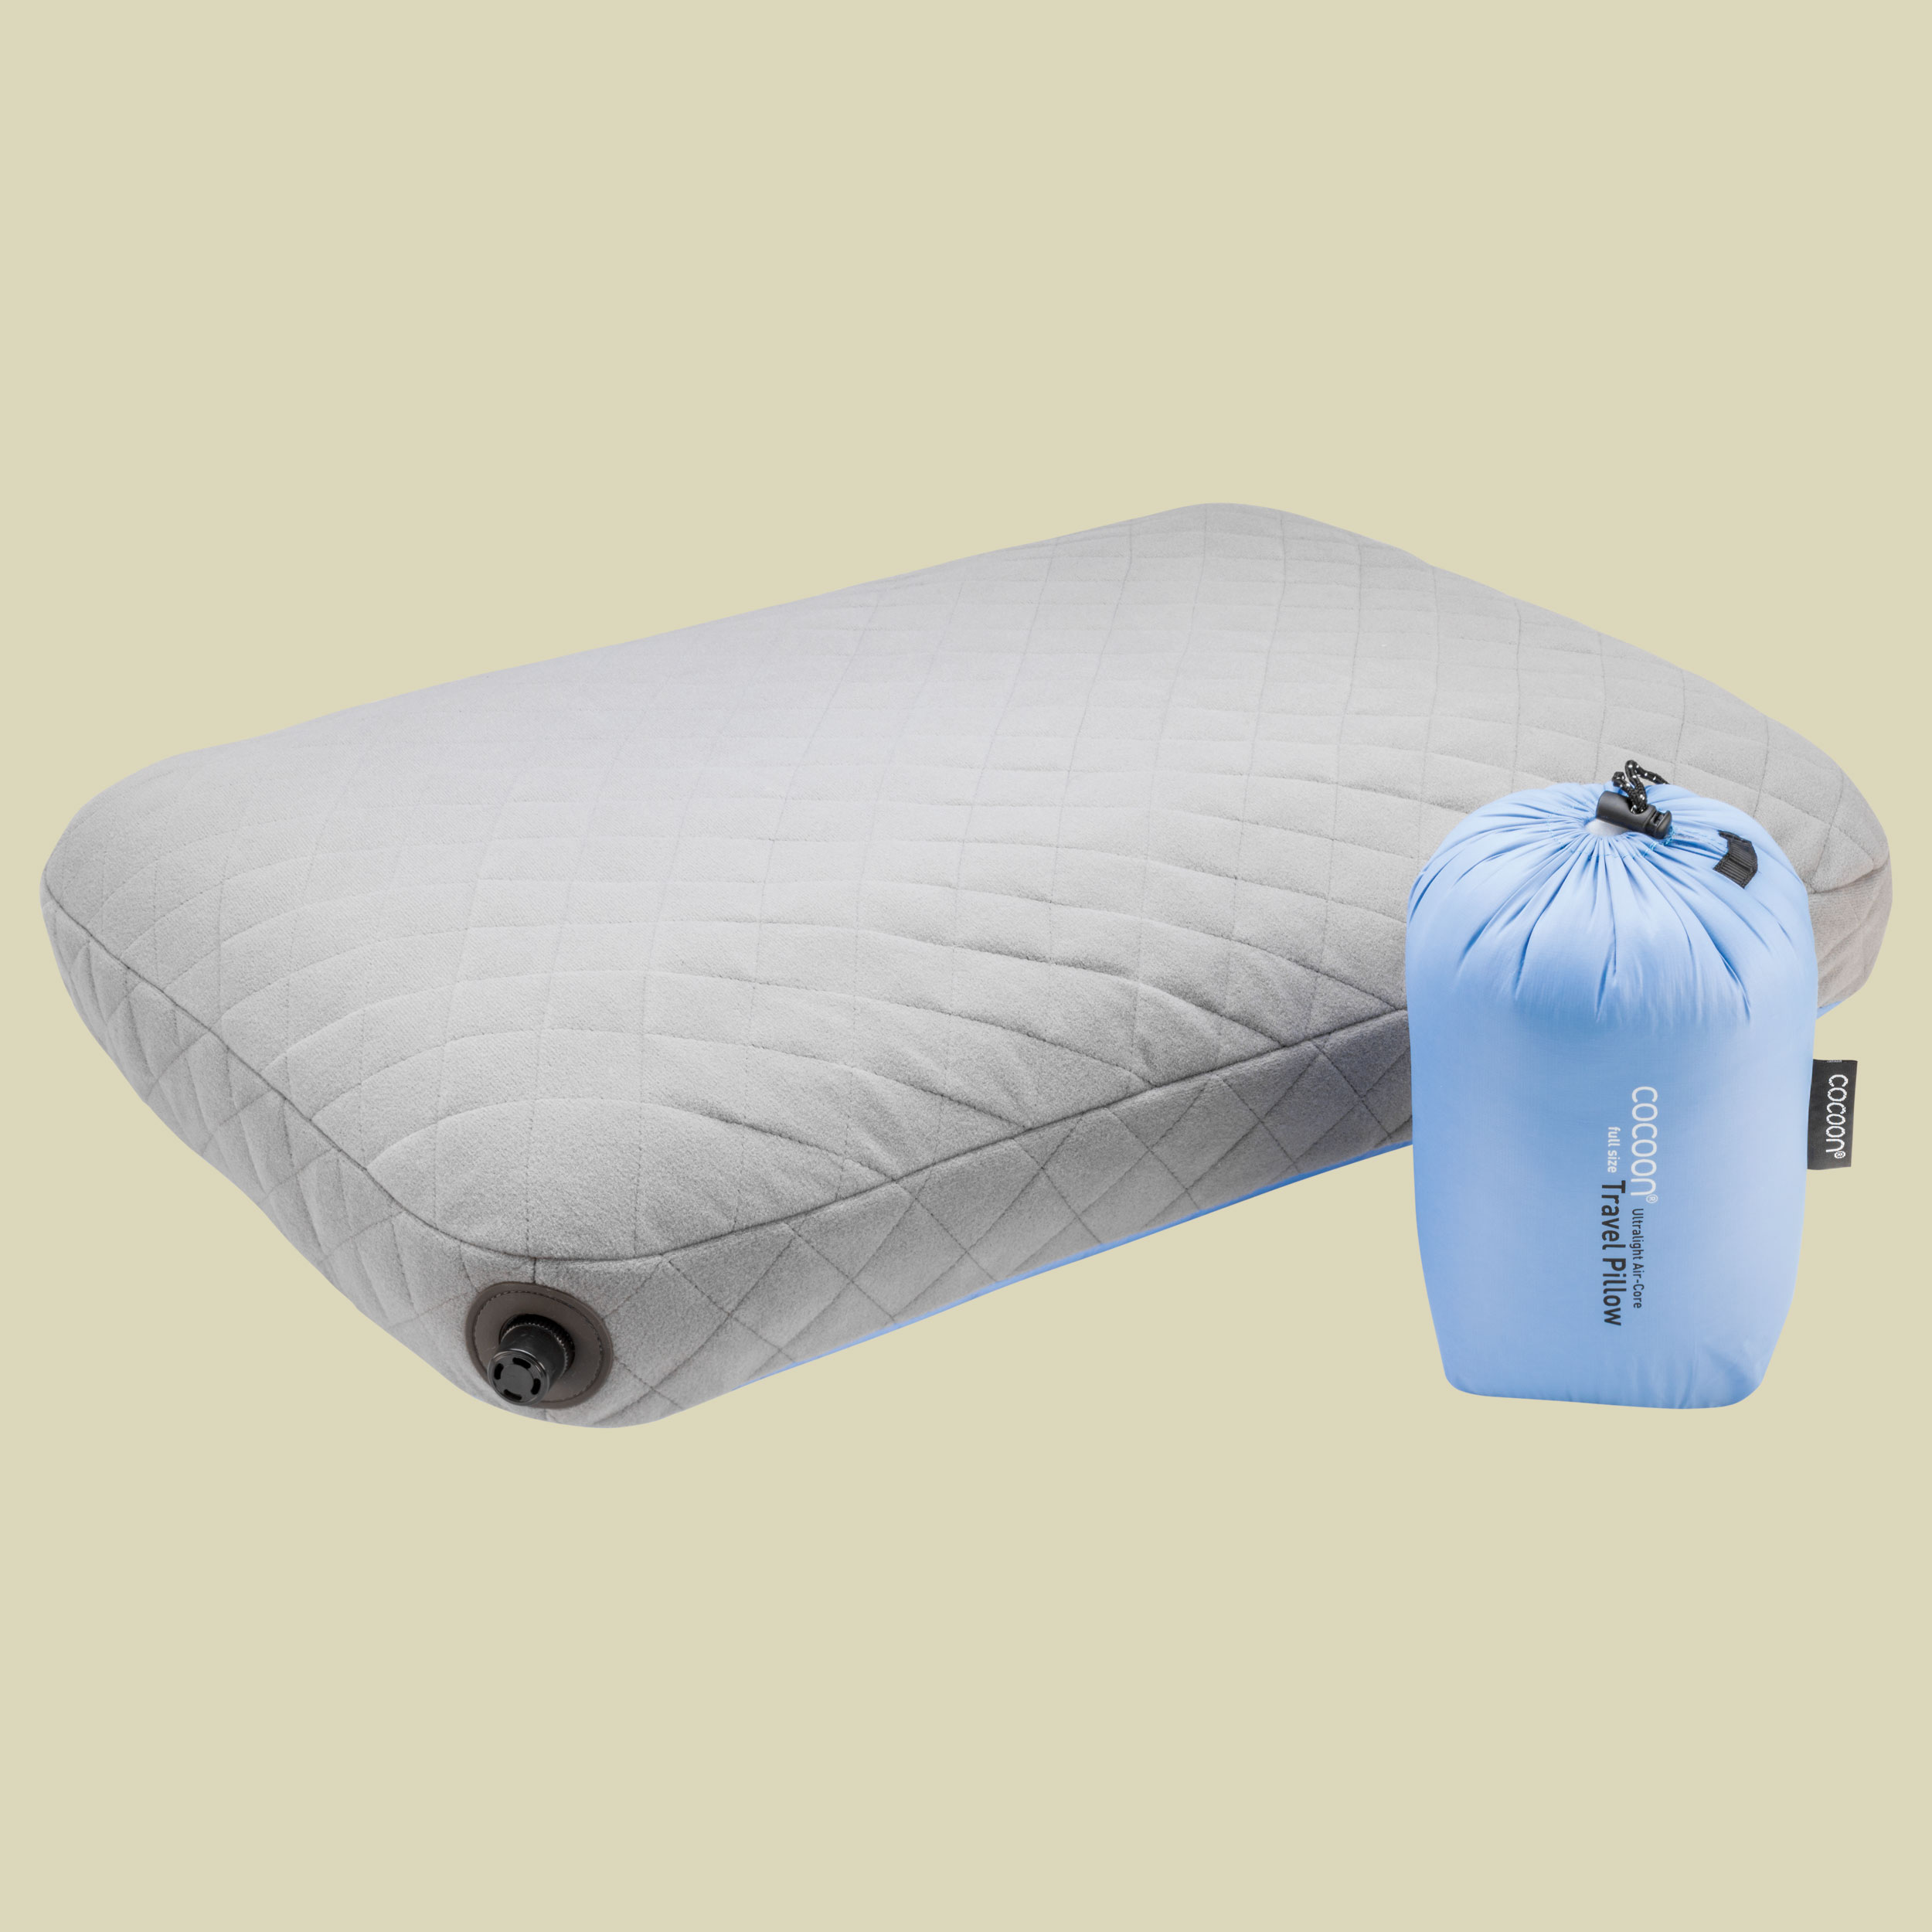 Air-Core Pillow Ultralight Größe 28 cm x 38 cm Farbe light blue/grey